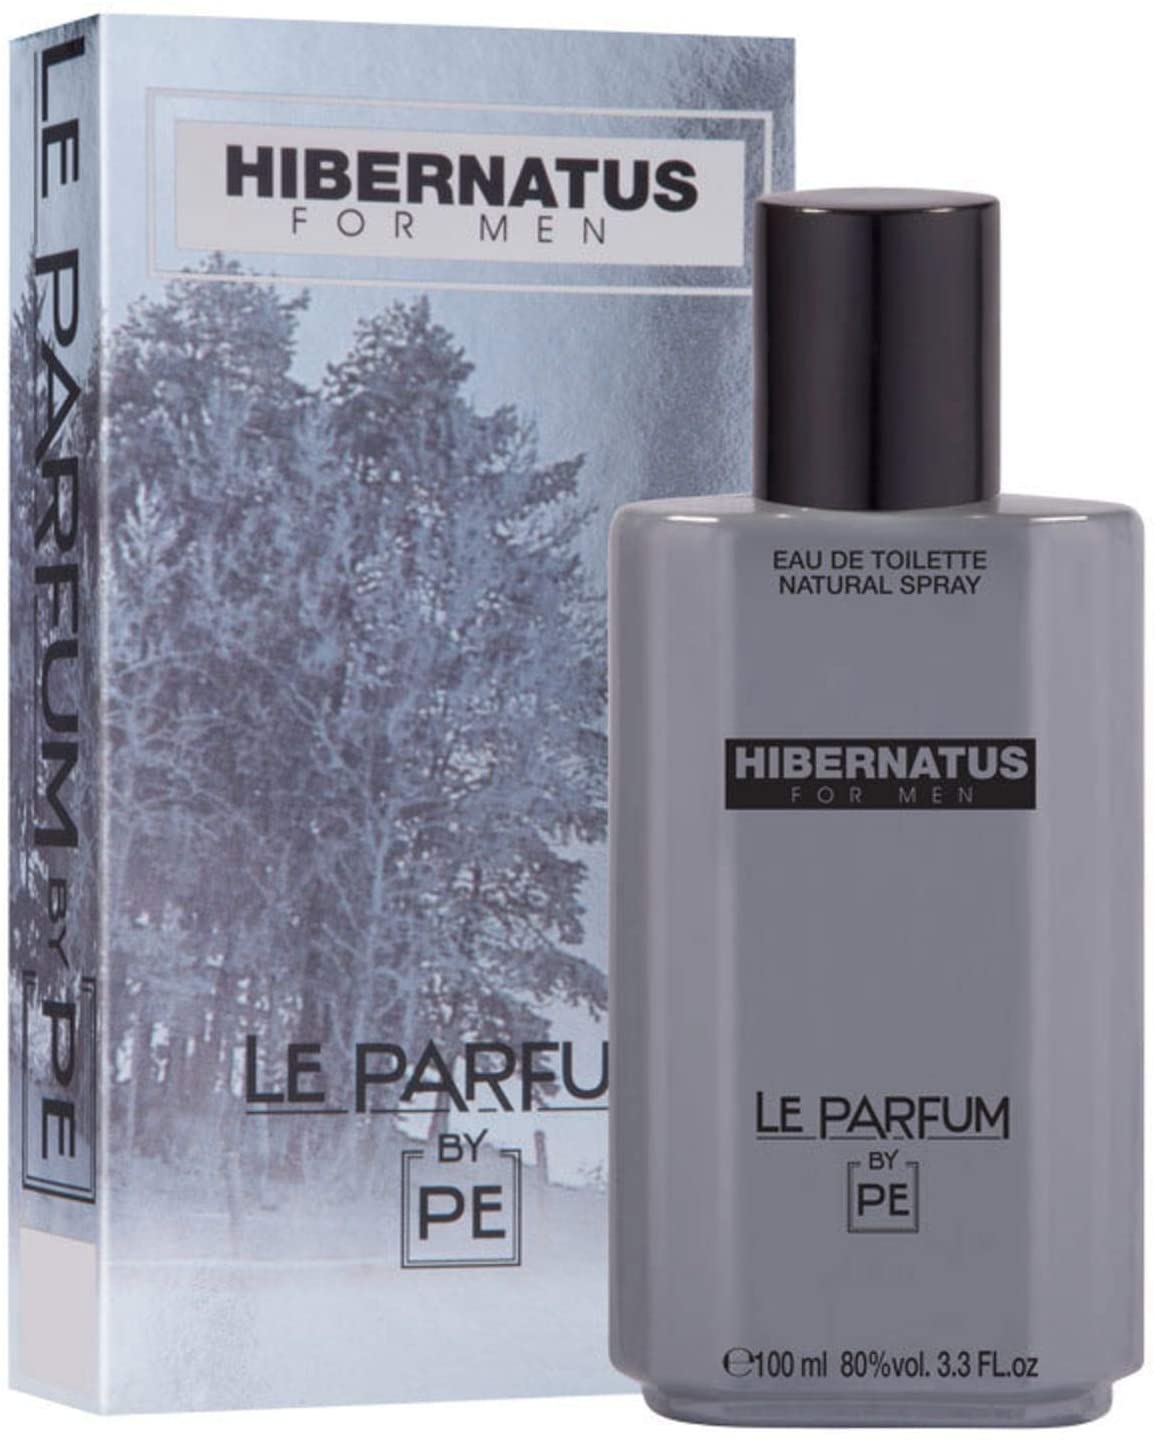 Hibernatus Paris Elysees - 100ml